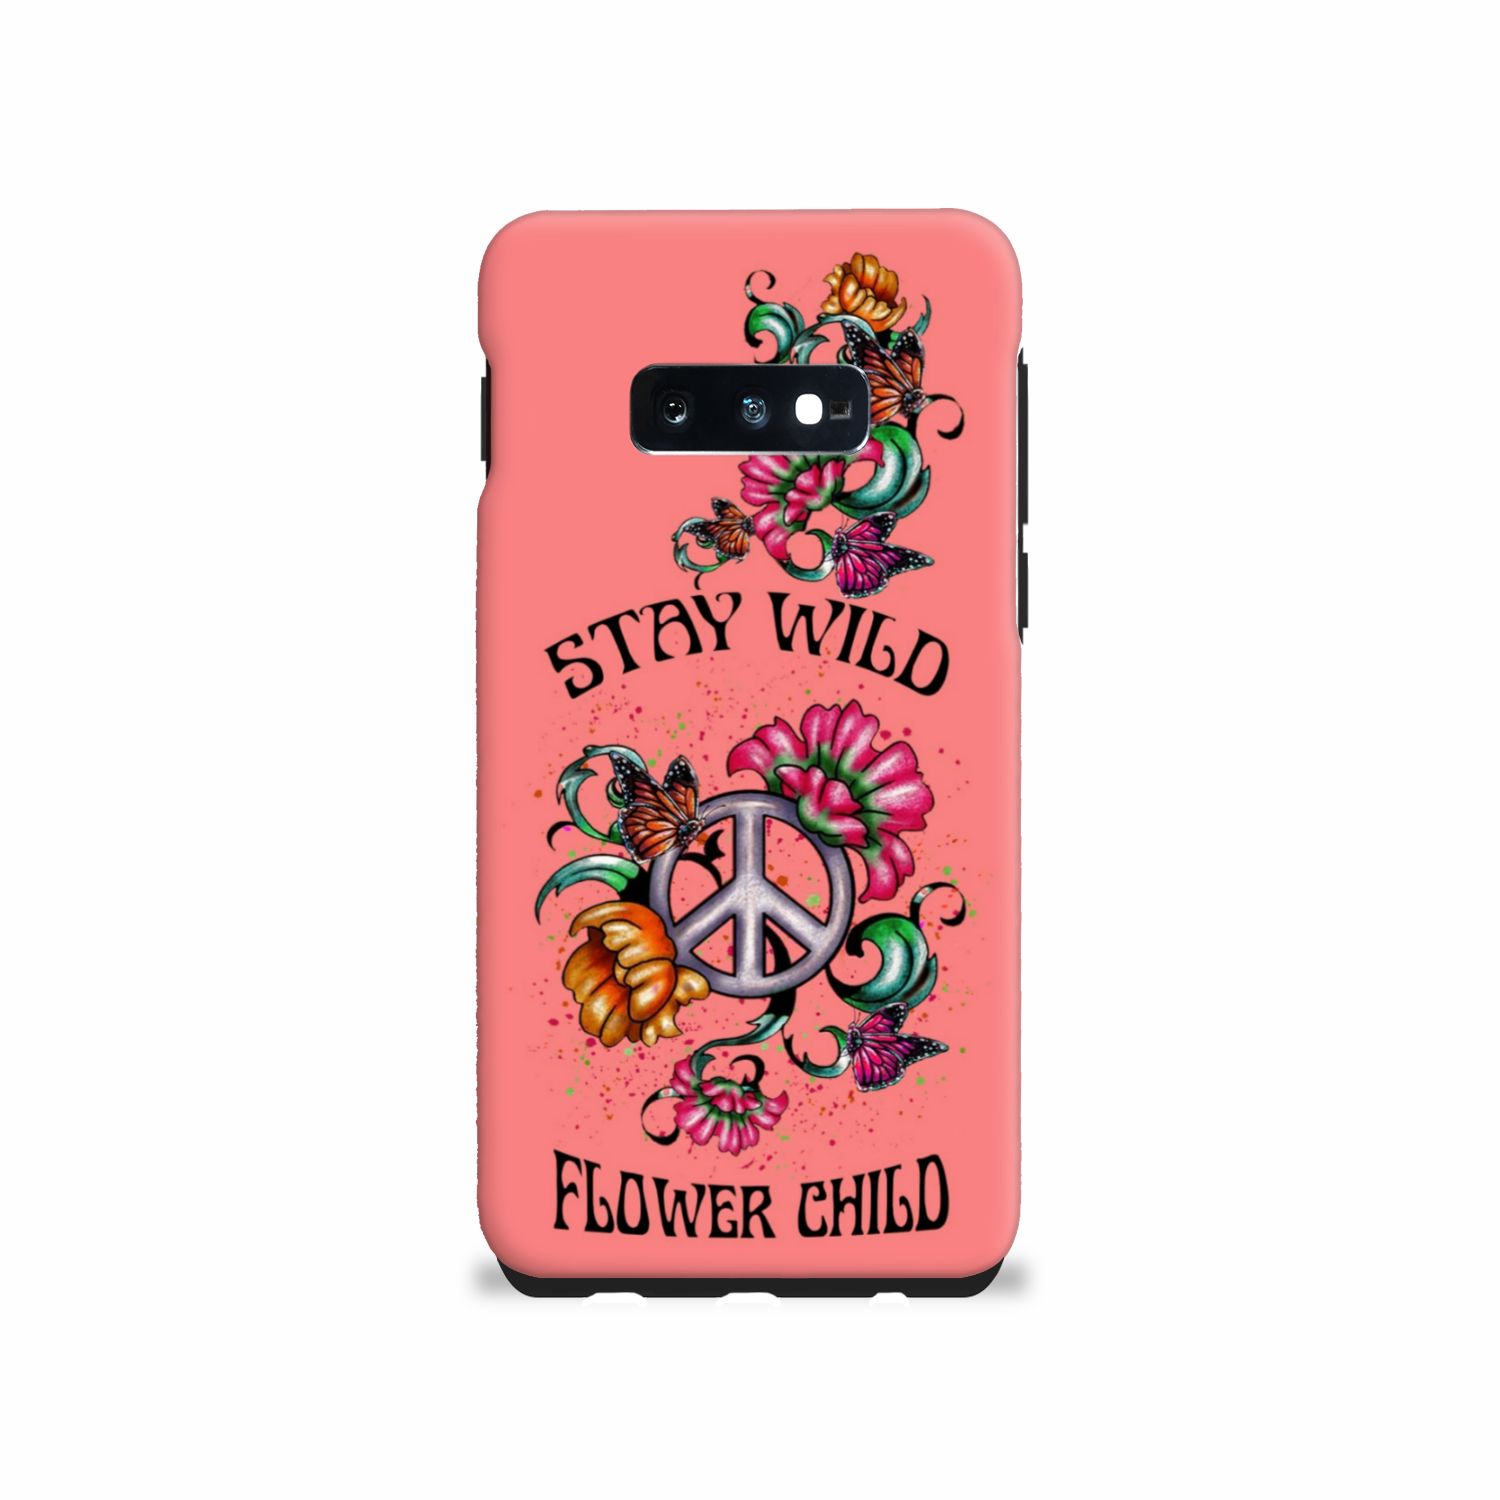 STAY WILD FLOWER CHILD PHONE CASE - YHLN2003233